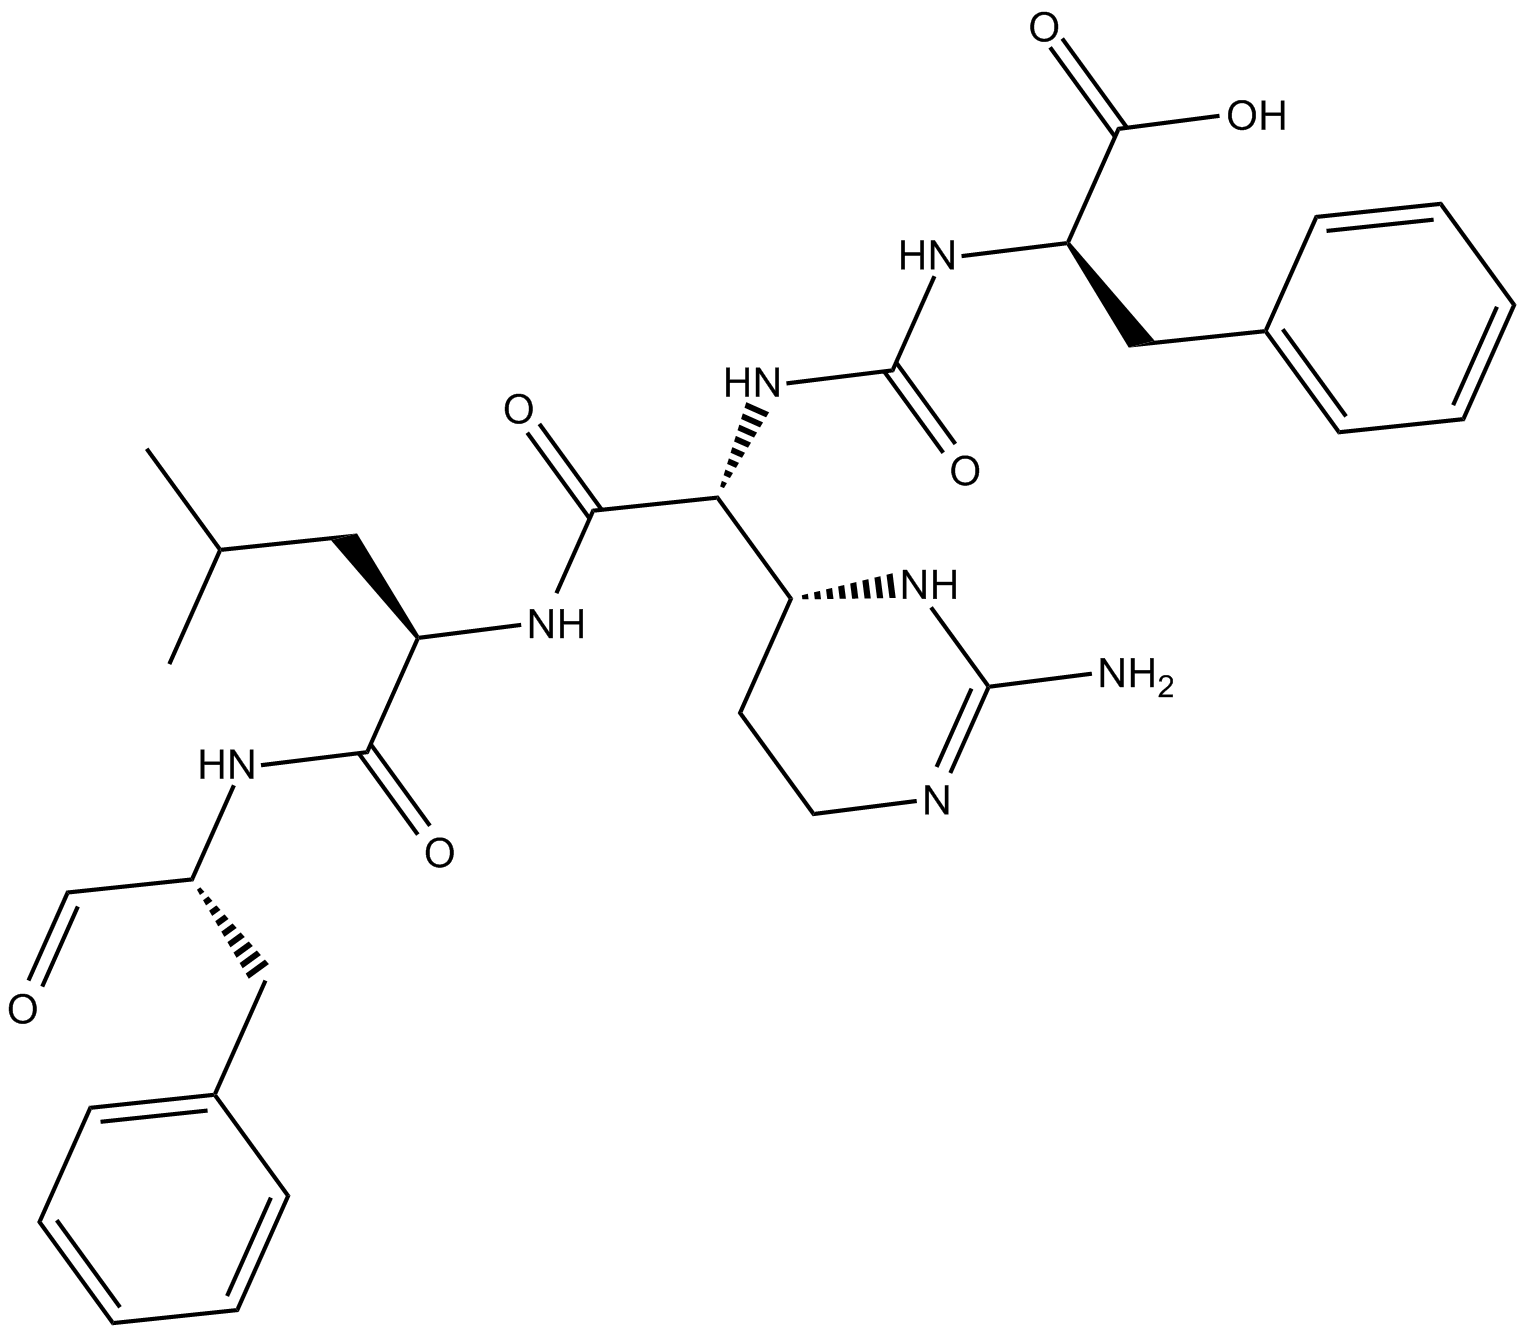 Chymostatin